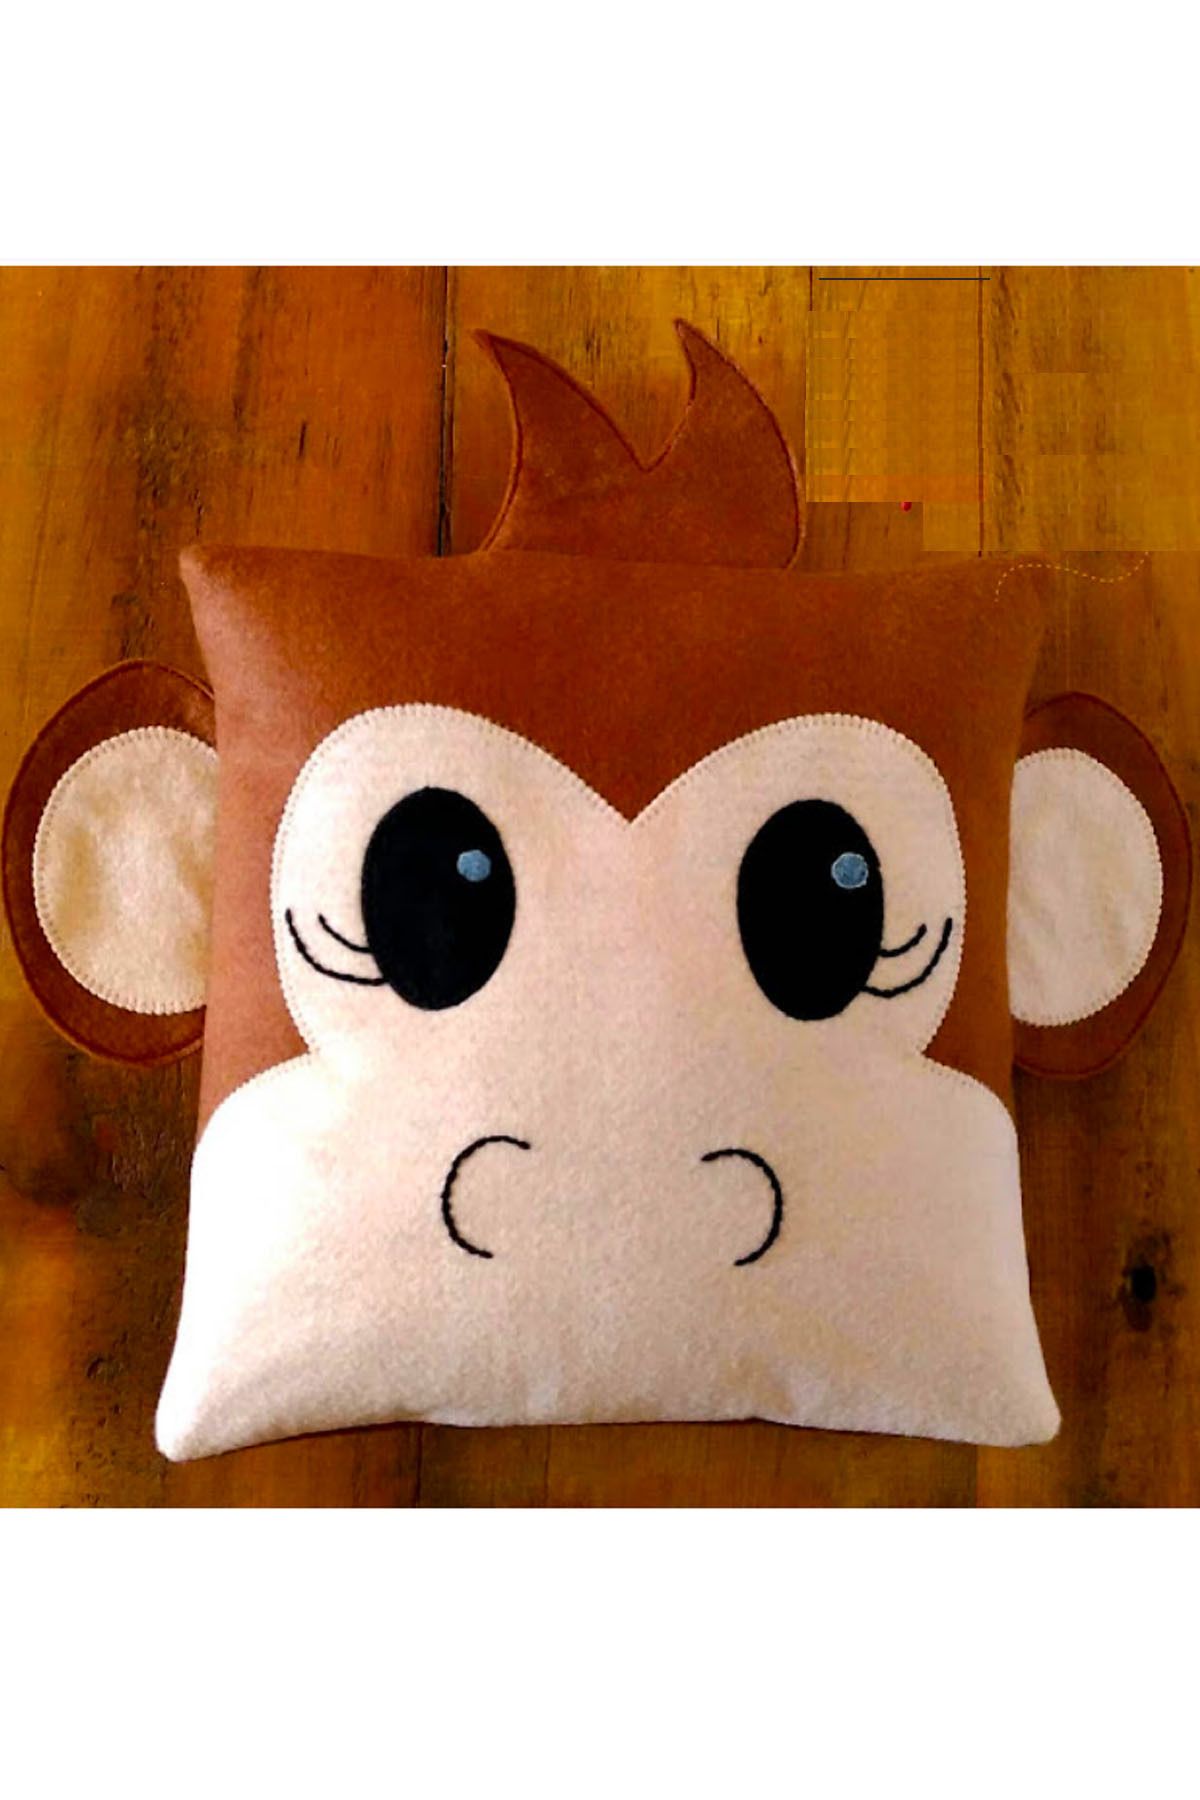 İnşirah Concept Maymun Çocuk Odası Doğal Keçe Dekoratif Yastık Bebek Odası Süsü Oyuncağı Sevimli Hayvan